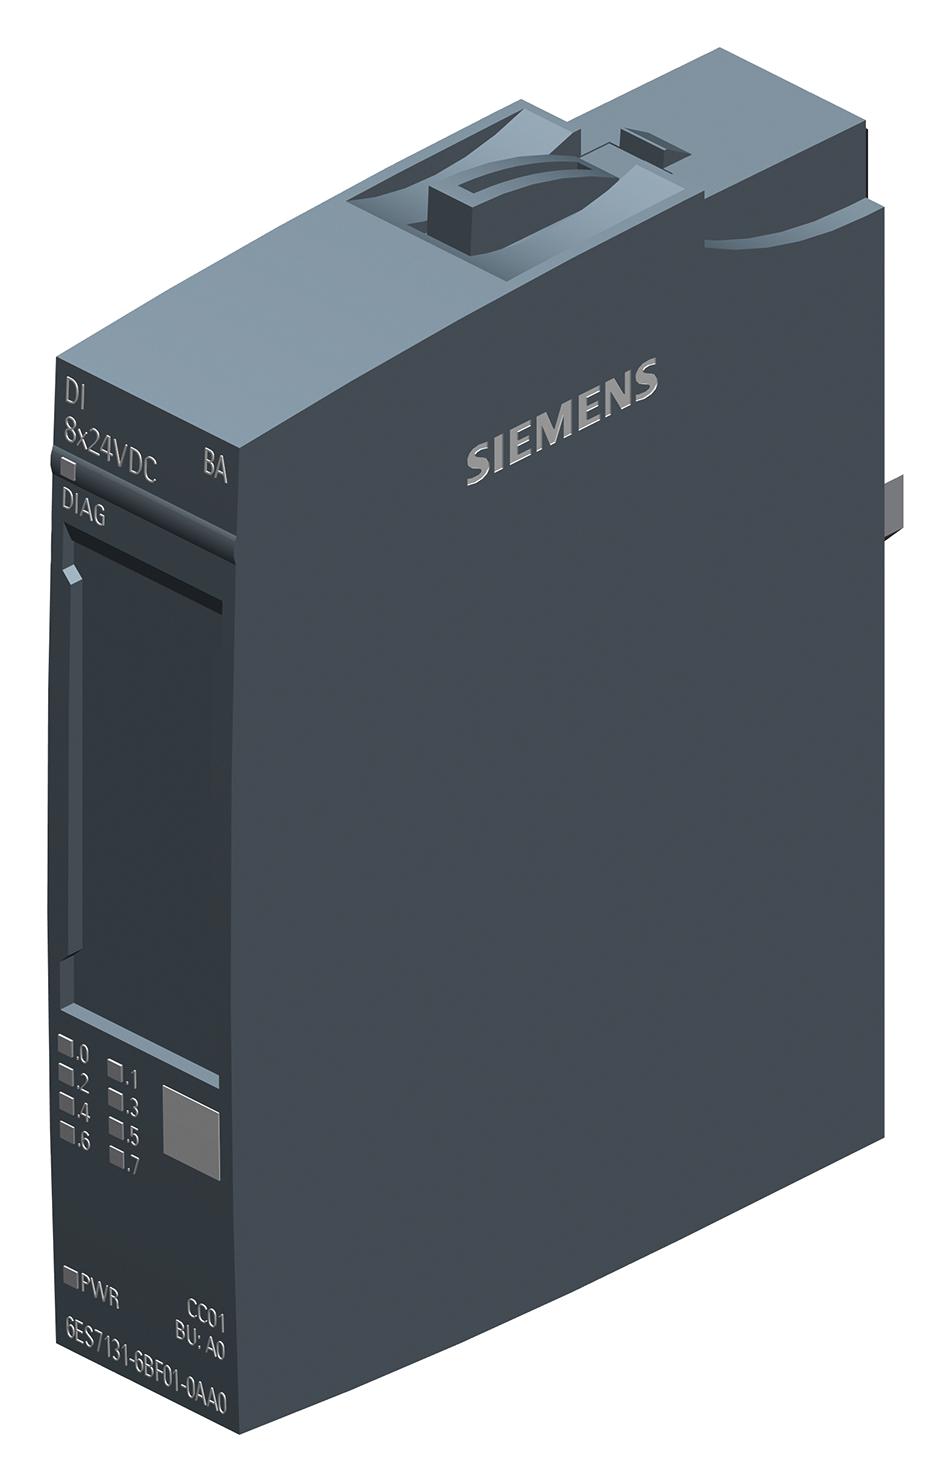 Siemens 6Es7131-6Bf01-0Aa0. Digital Input Module, 8 Input, 24Vdc